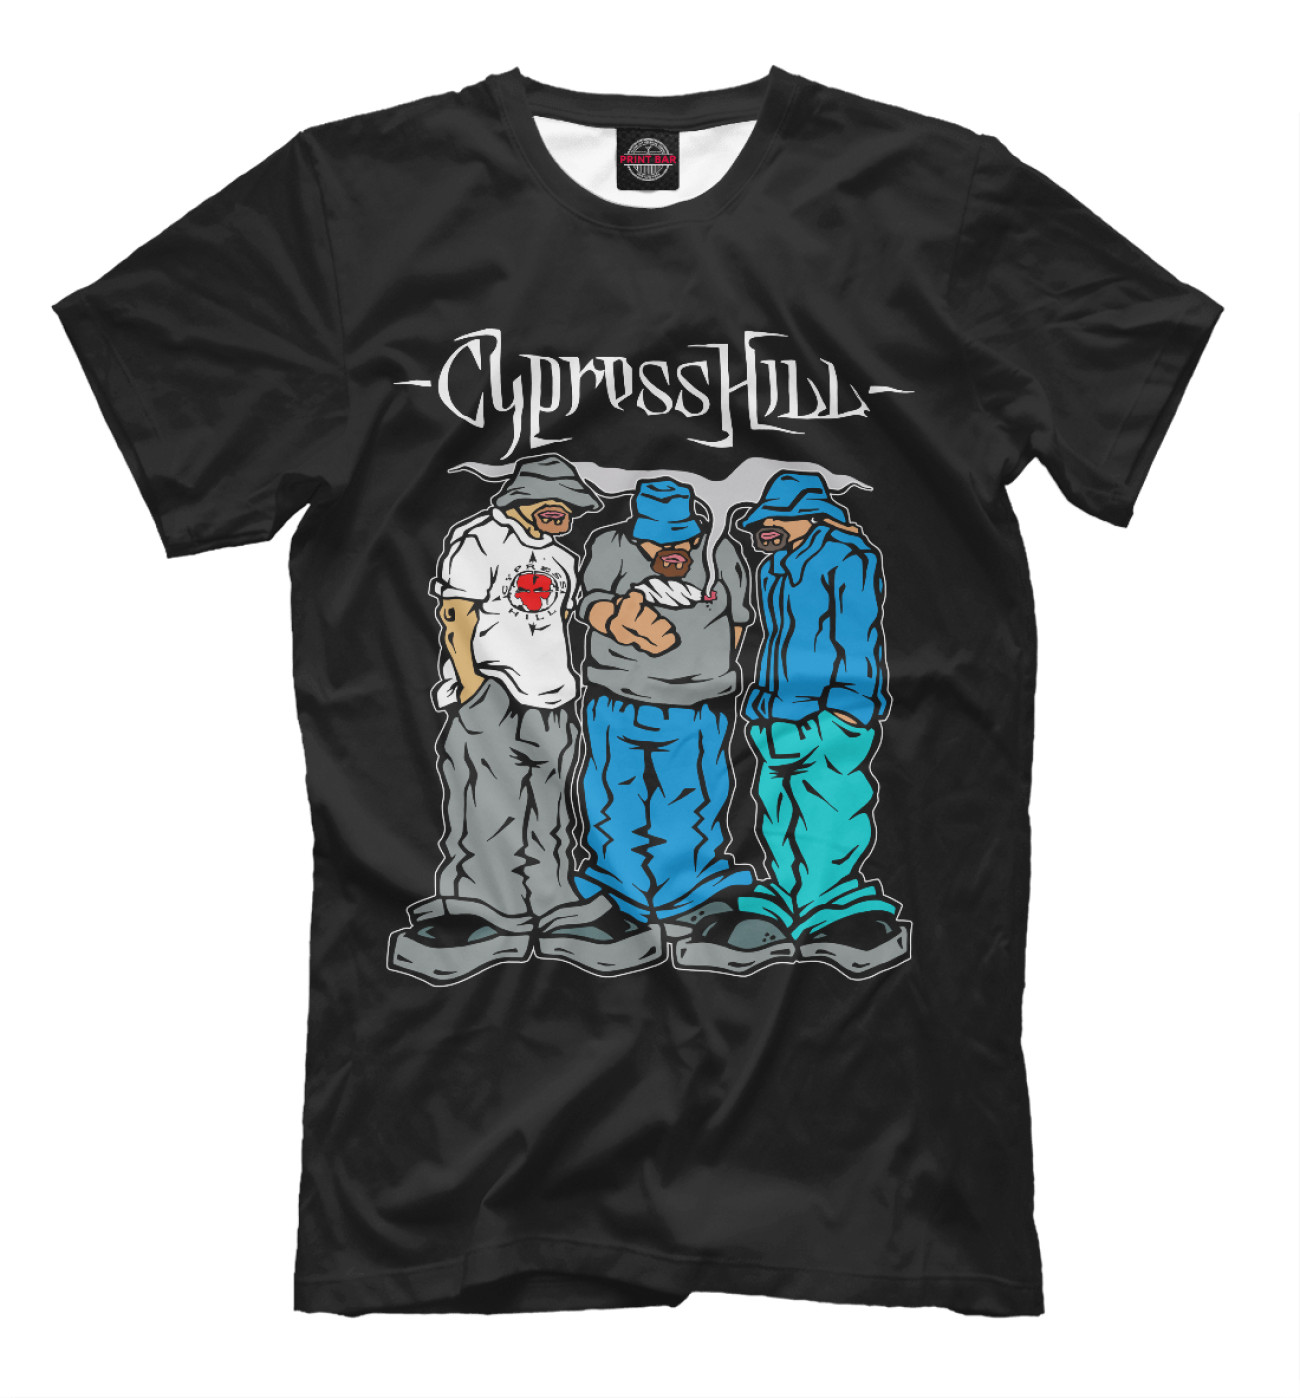 Мужская Футболка Cypress Hill, артикул: CPR-308586-fut-2